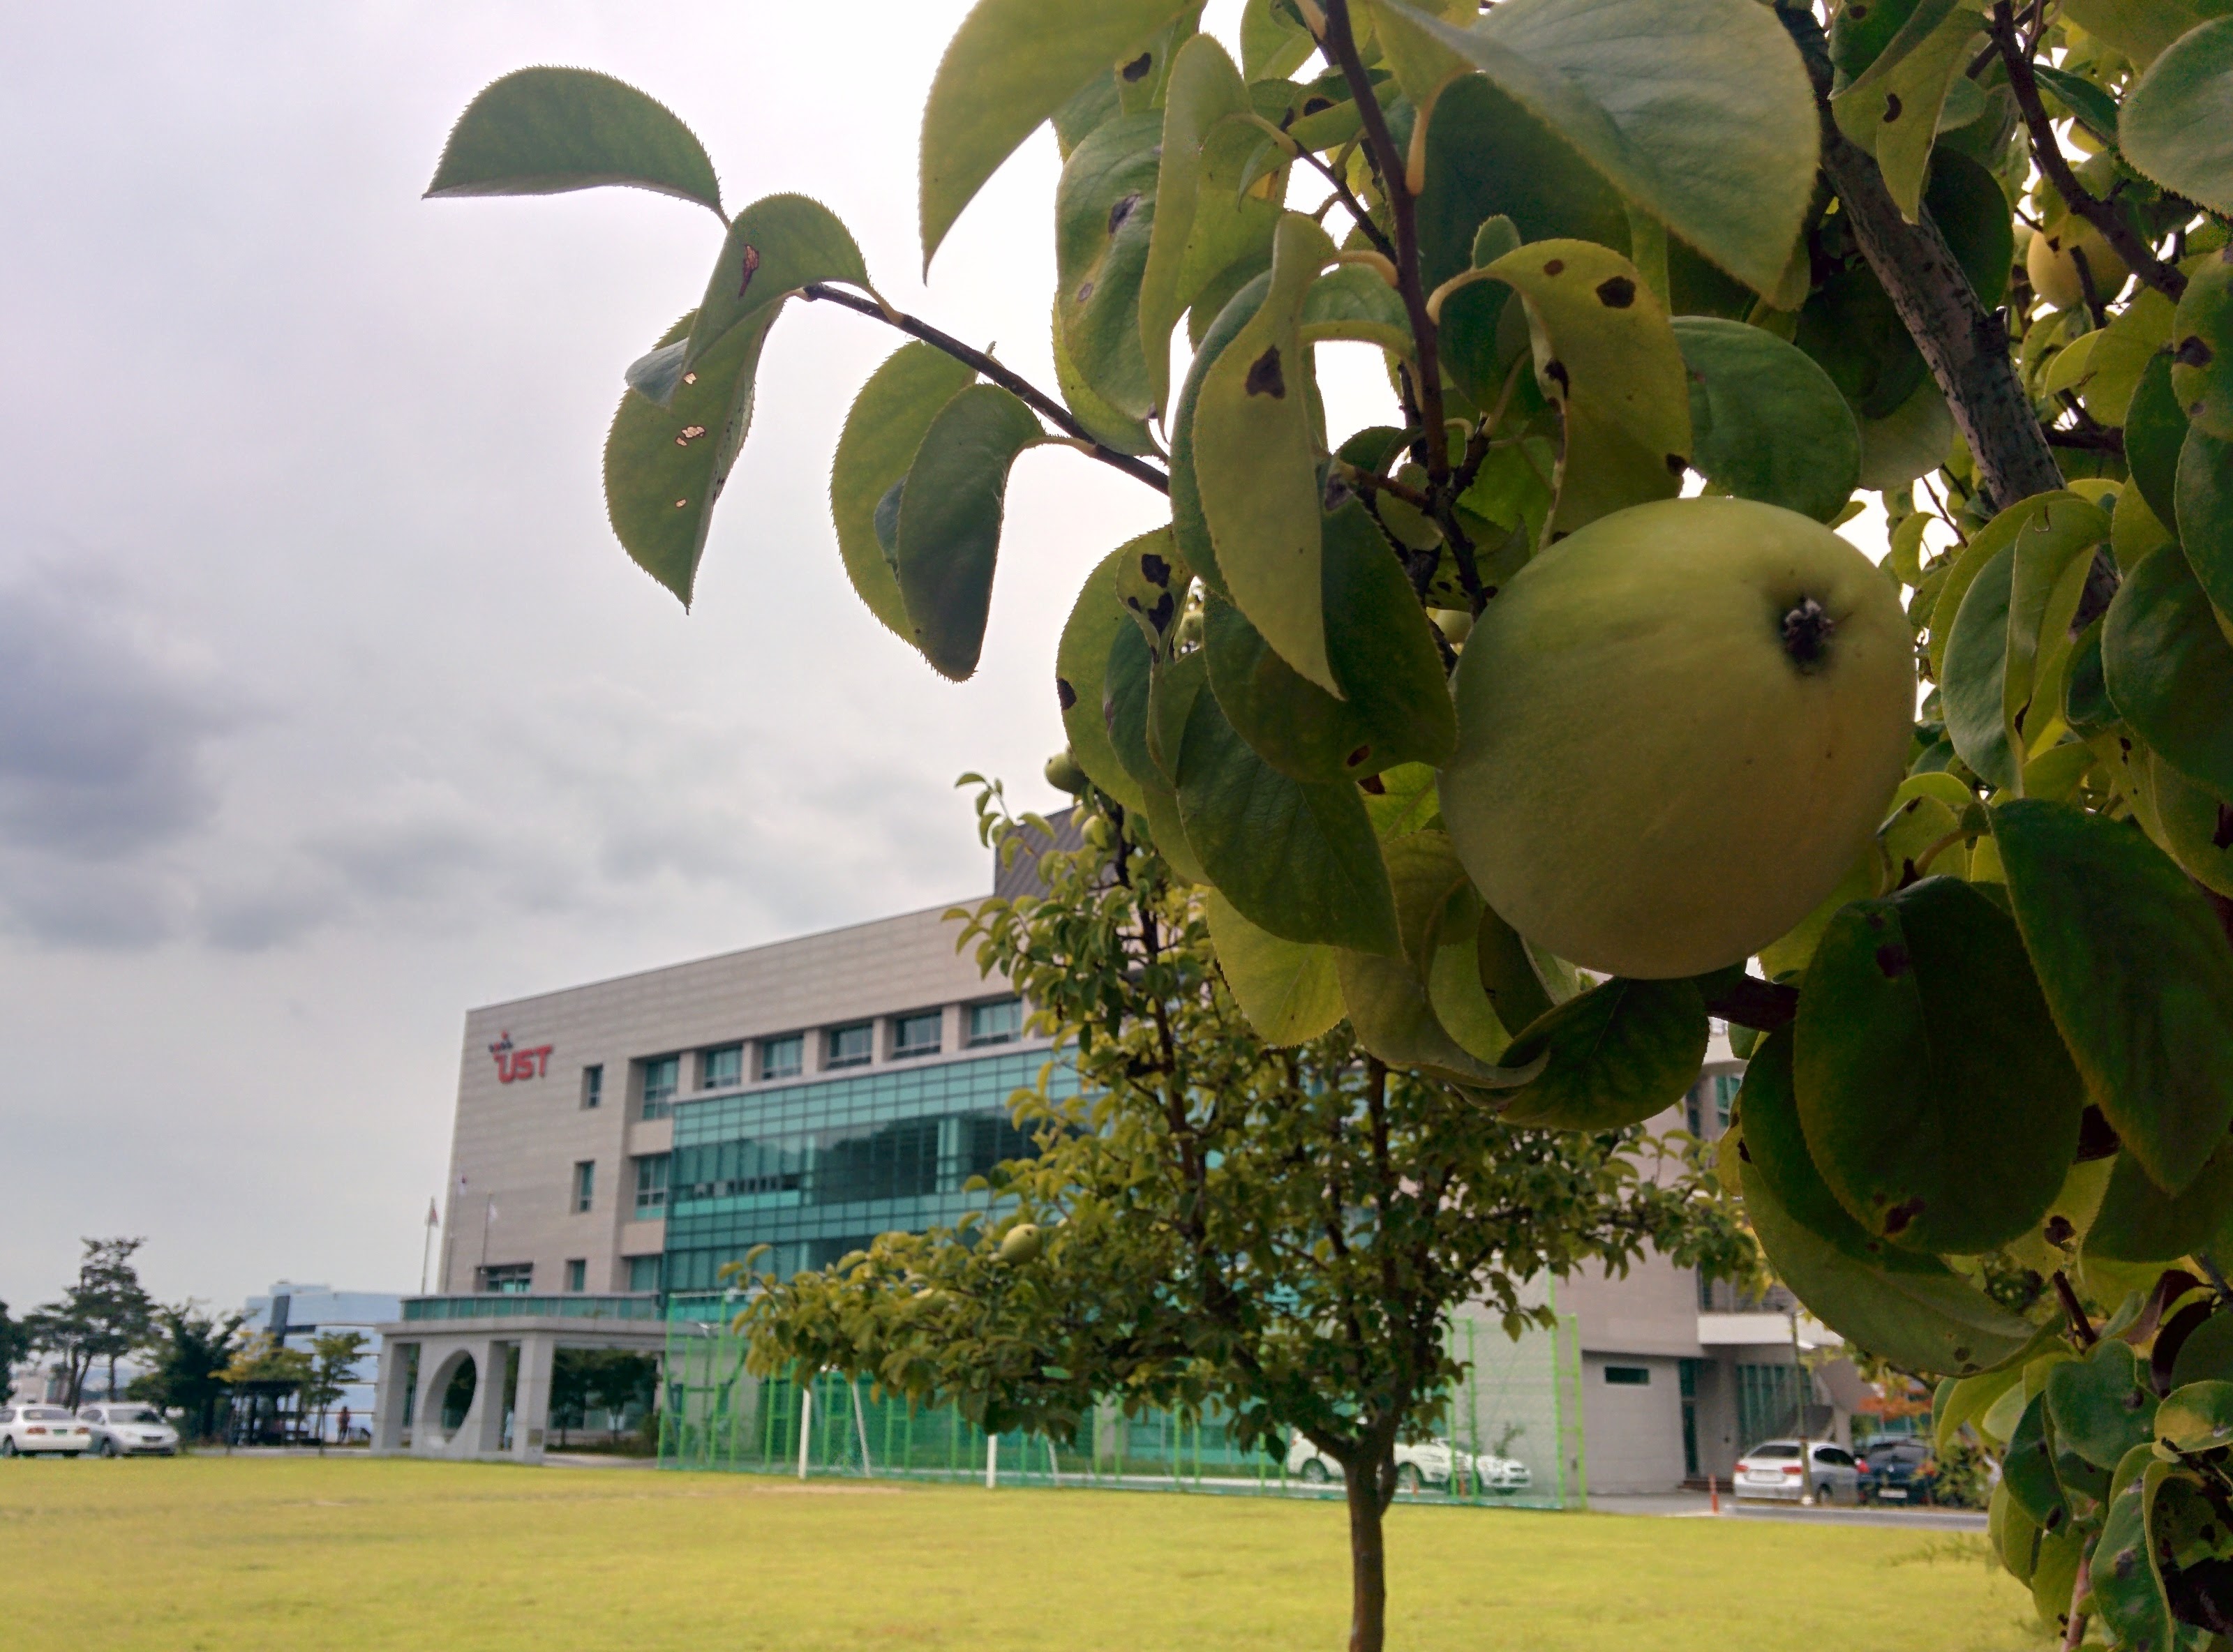 IMG_20150916_165101.jpg 과학기술연합대학원대학교 모과나무에 모과열매가 주렁주렁